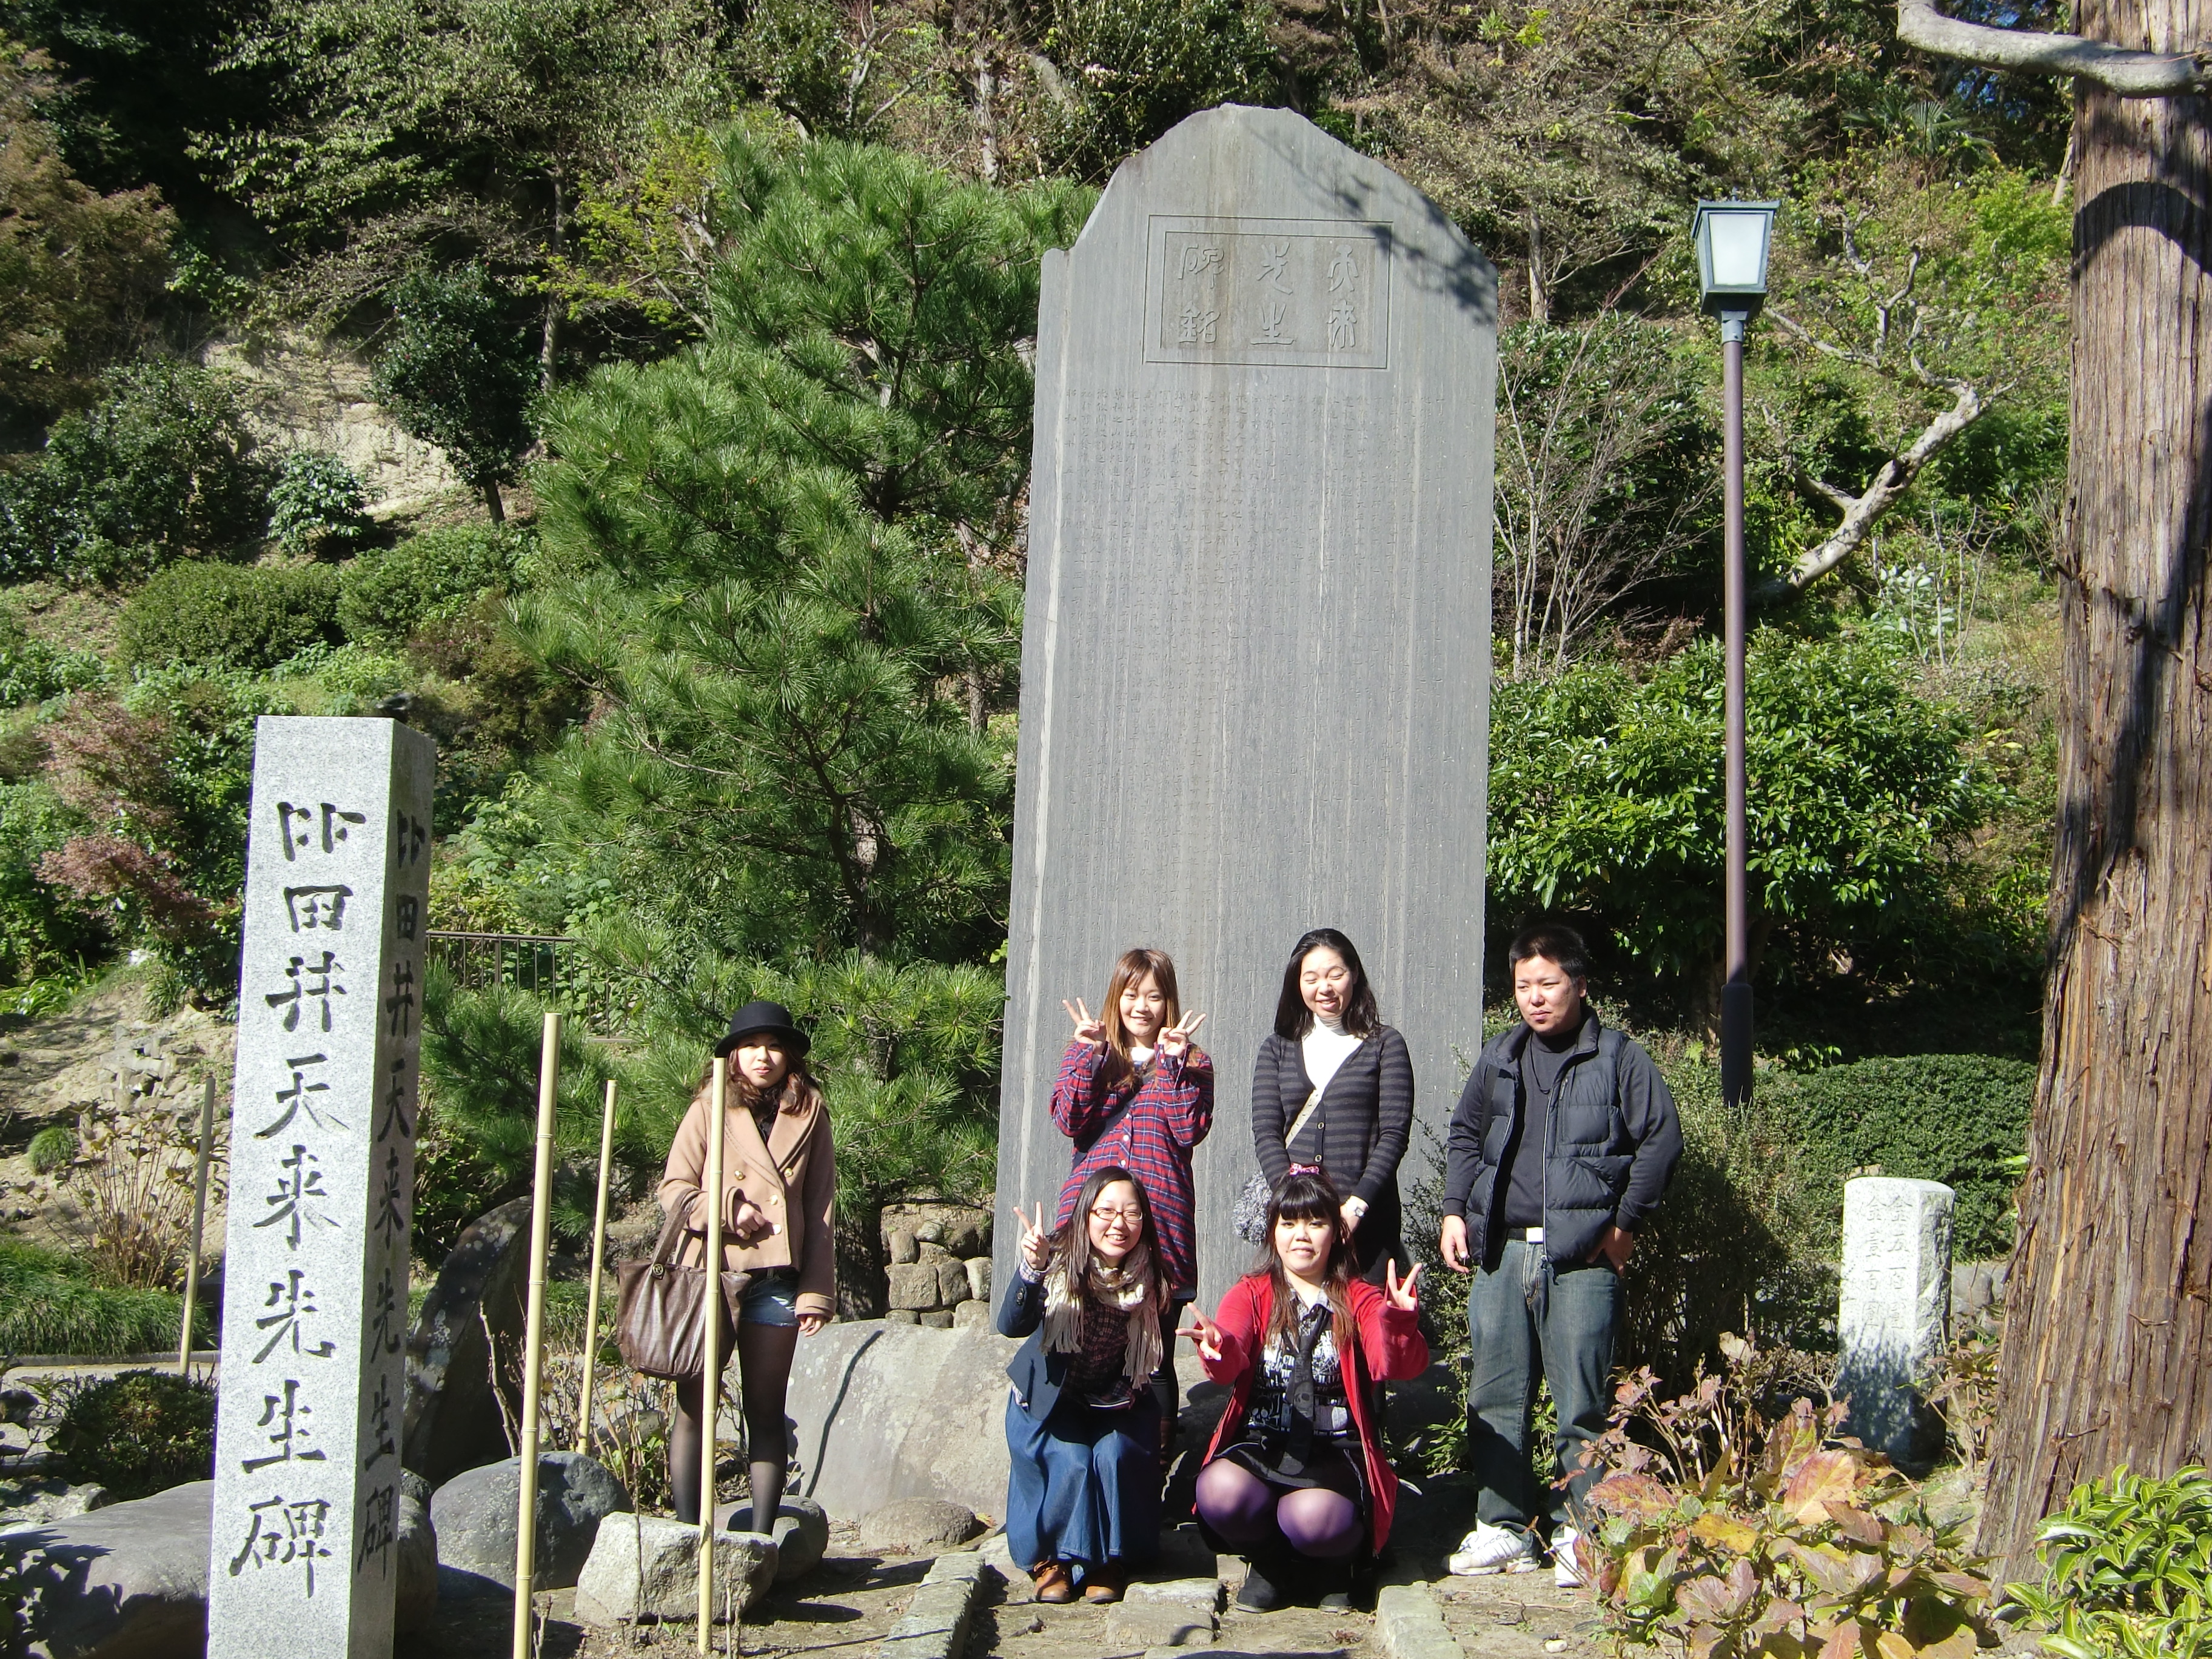 比田井天来先生の石碑前で記念写真